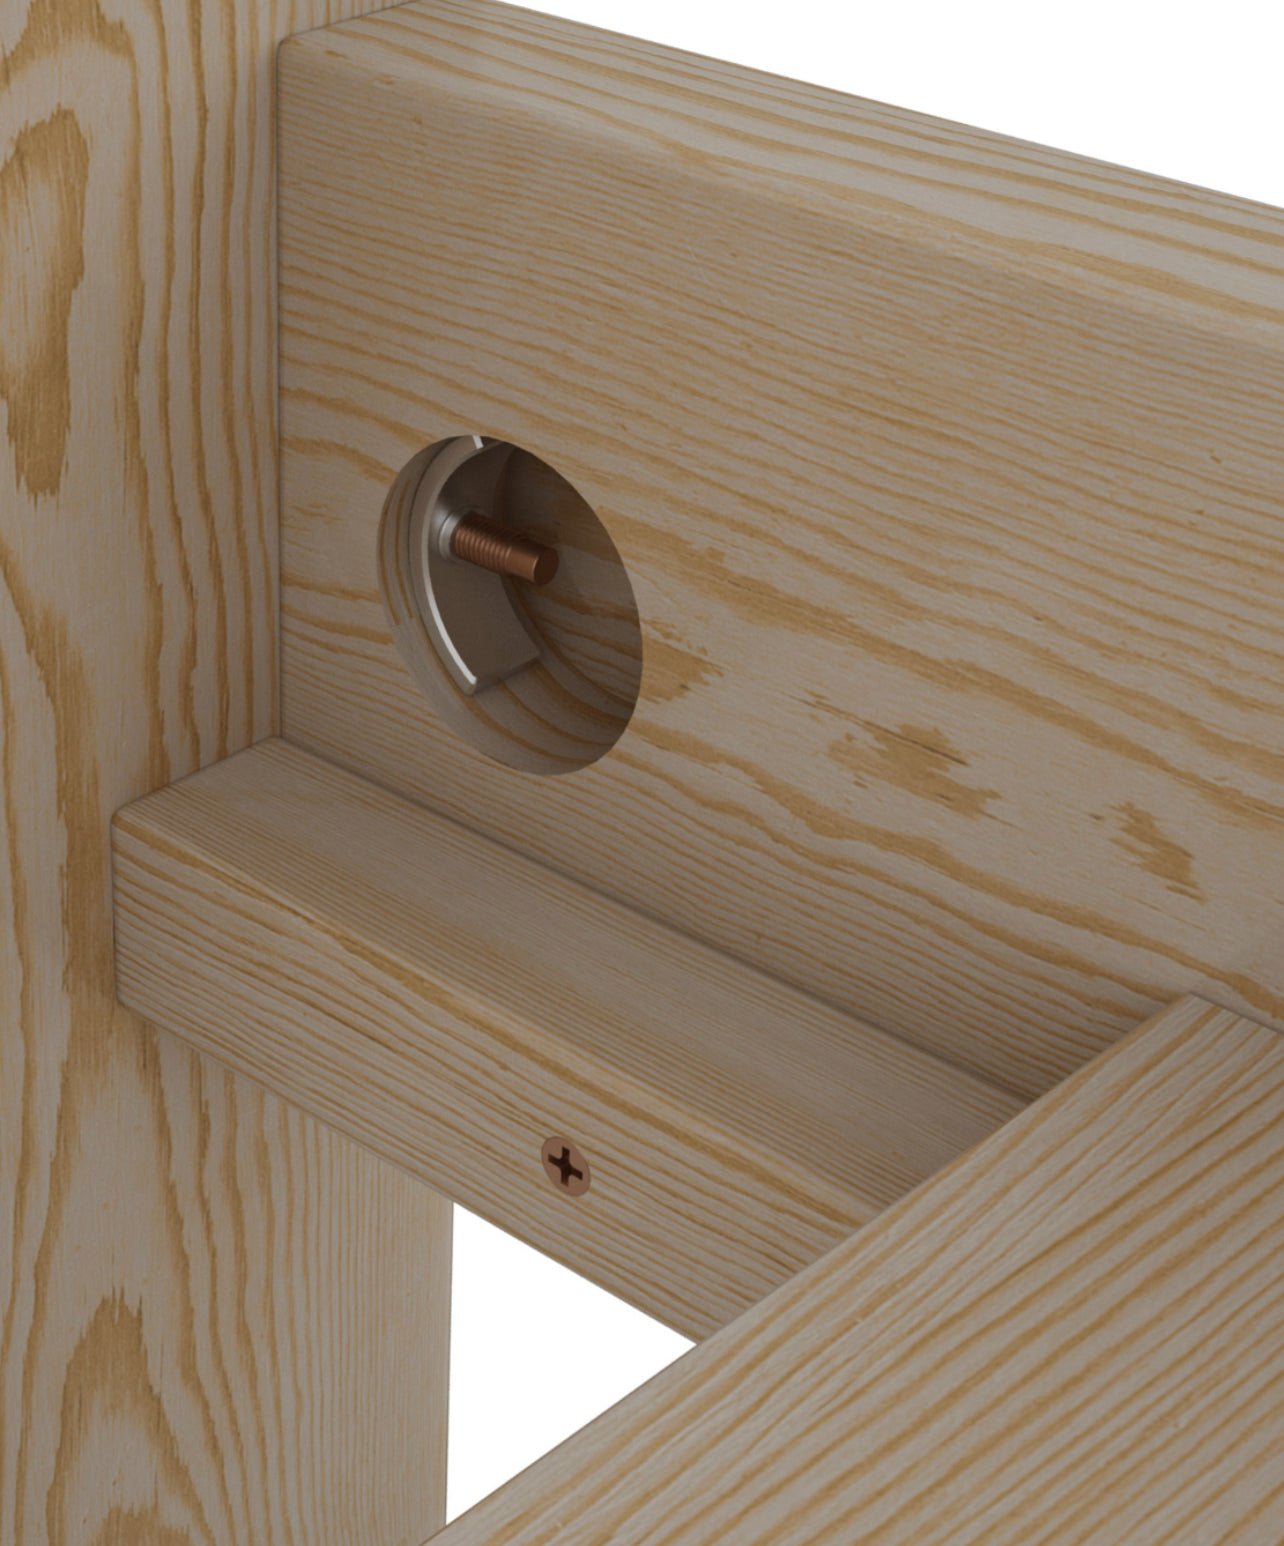      Wooden-bed-frame-details